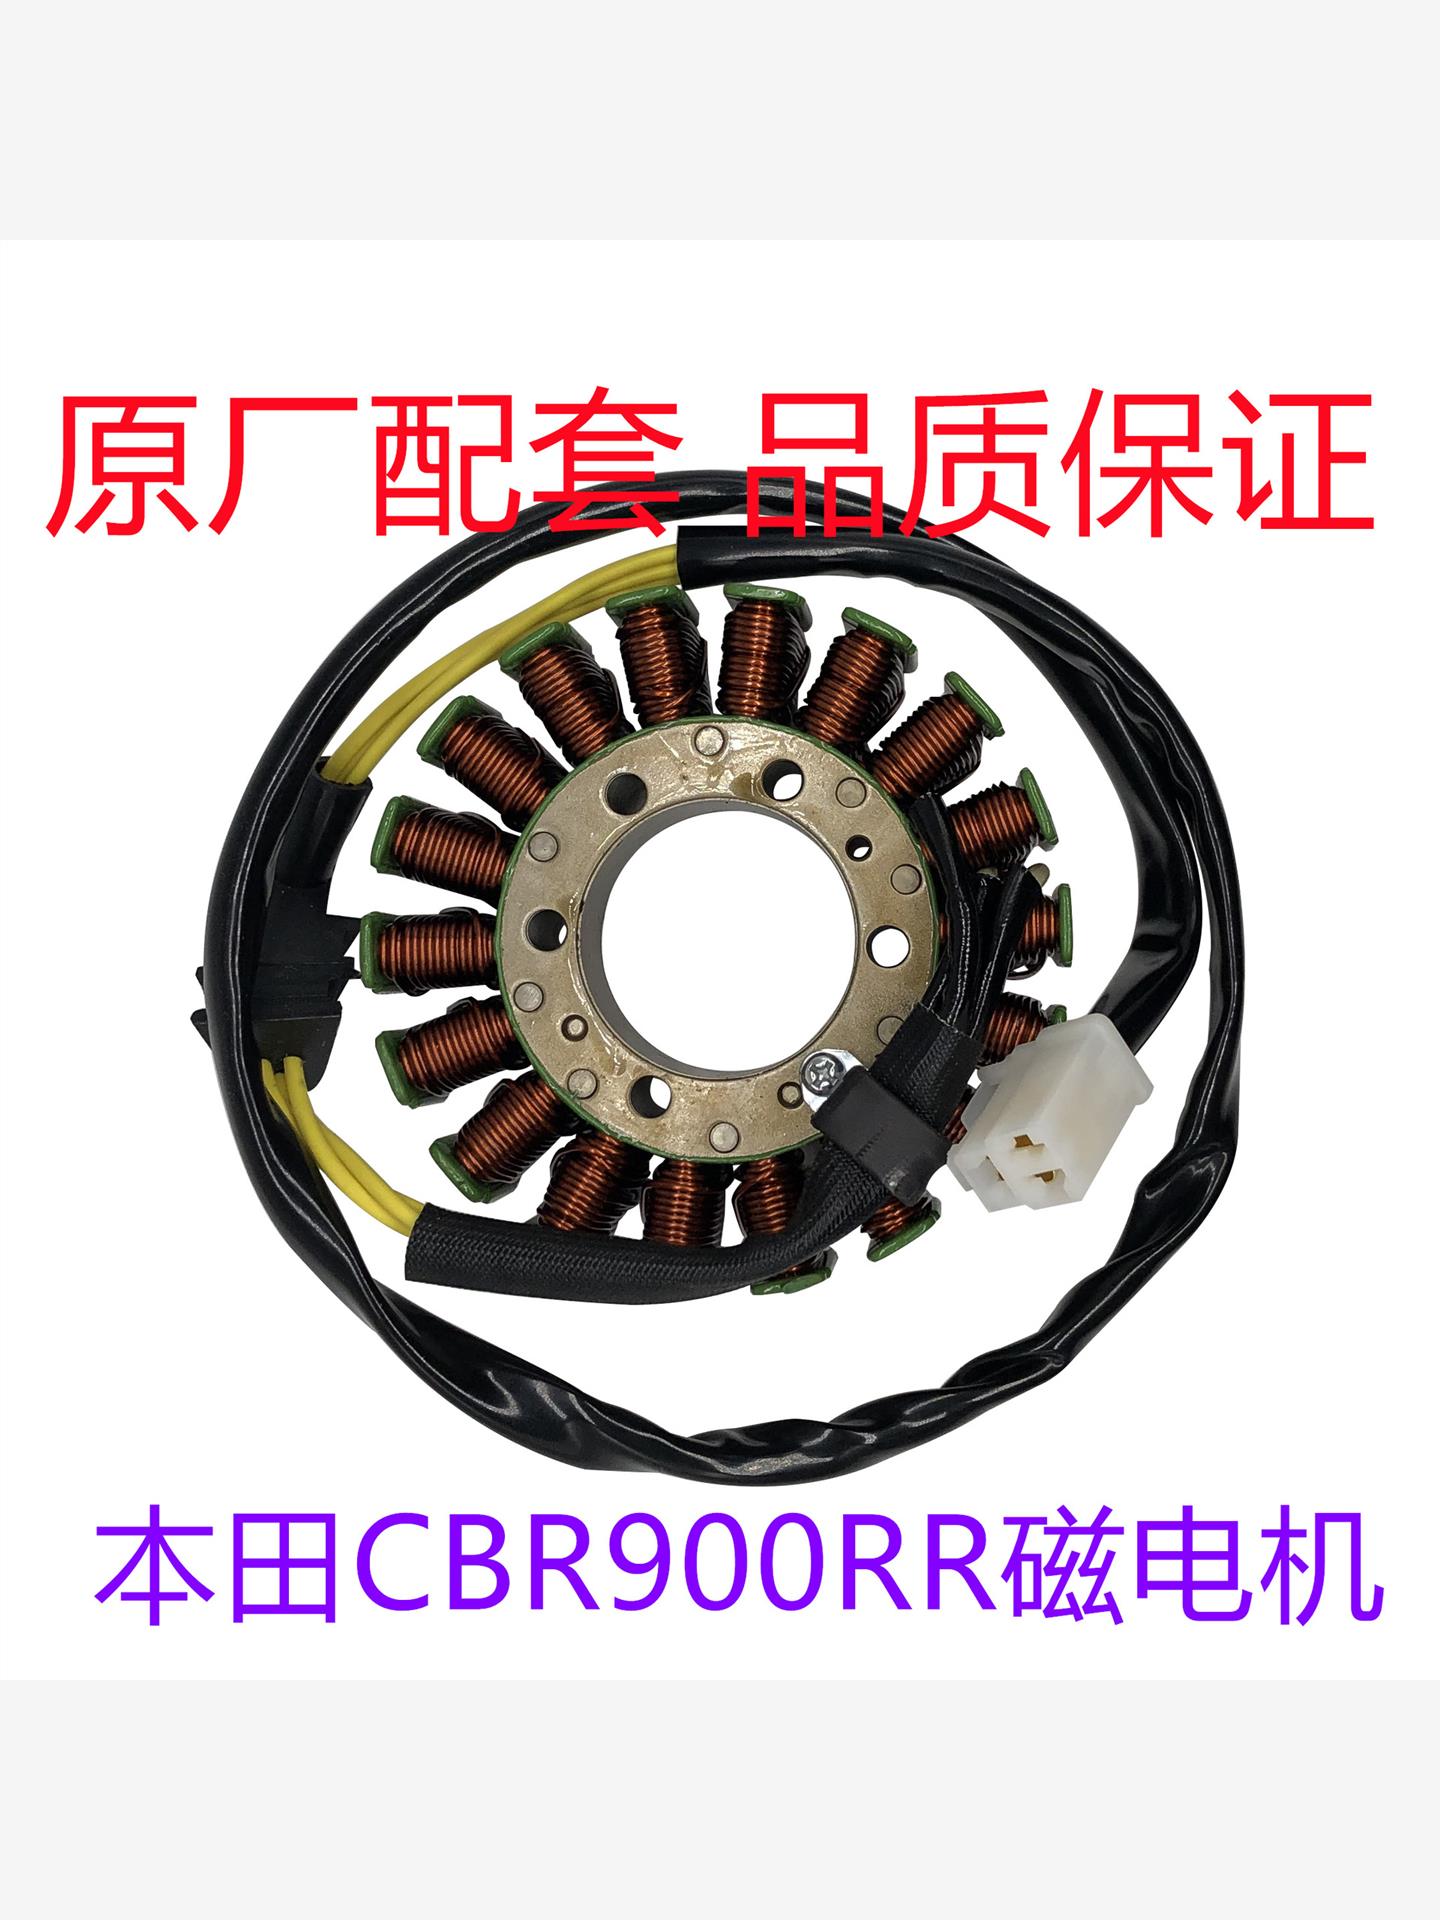 发动机点火线圈 919 CBR900RR 磁线圈定子适用于本田